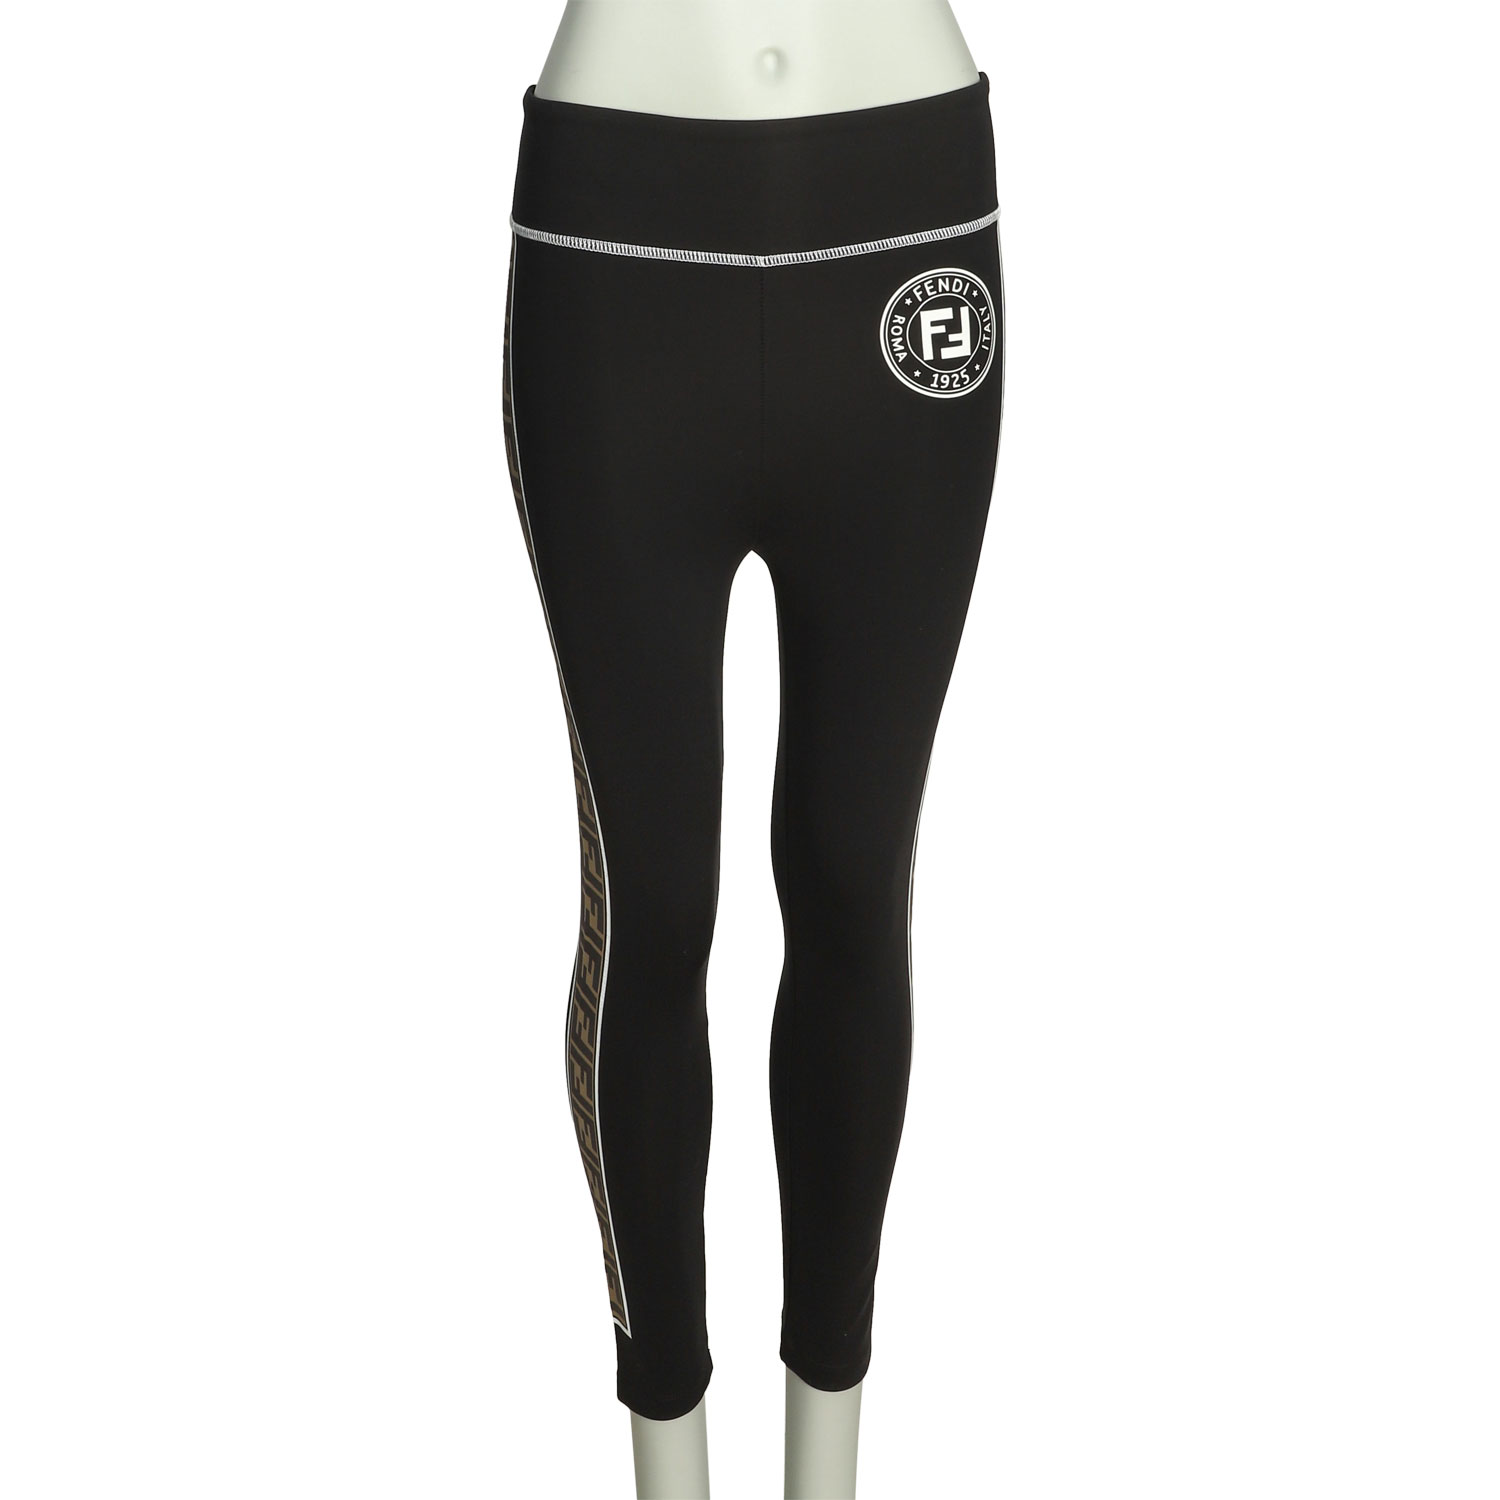 Fendi Leggings - 12 For Sale on 1stDibs  fendi tights sale, fendi workout  set, fendi leggings sale